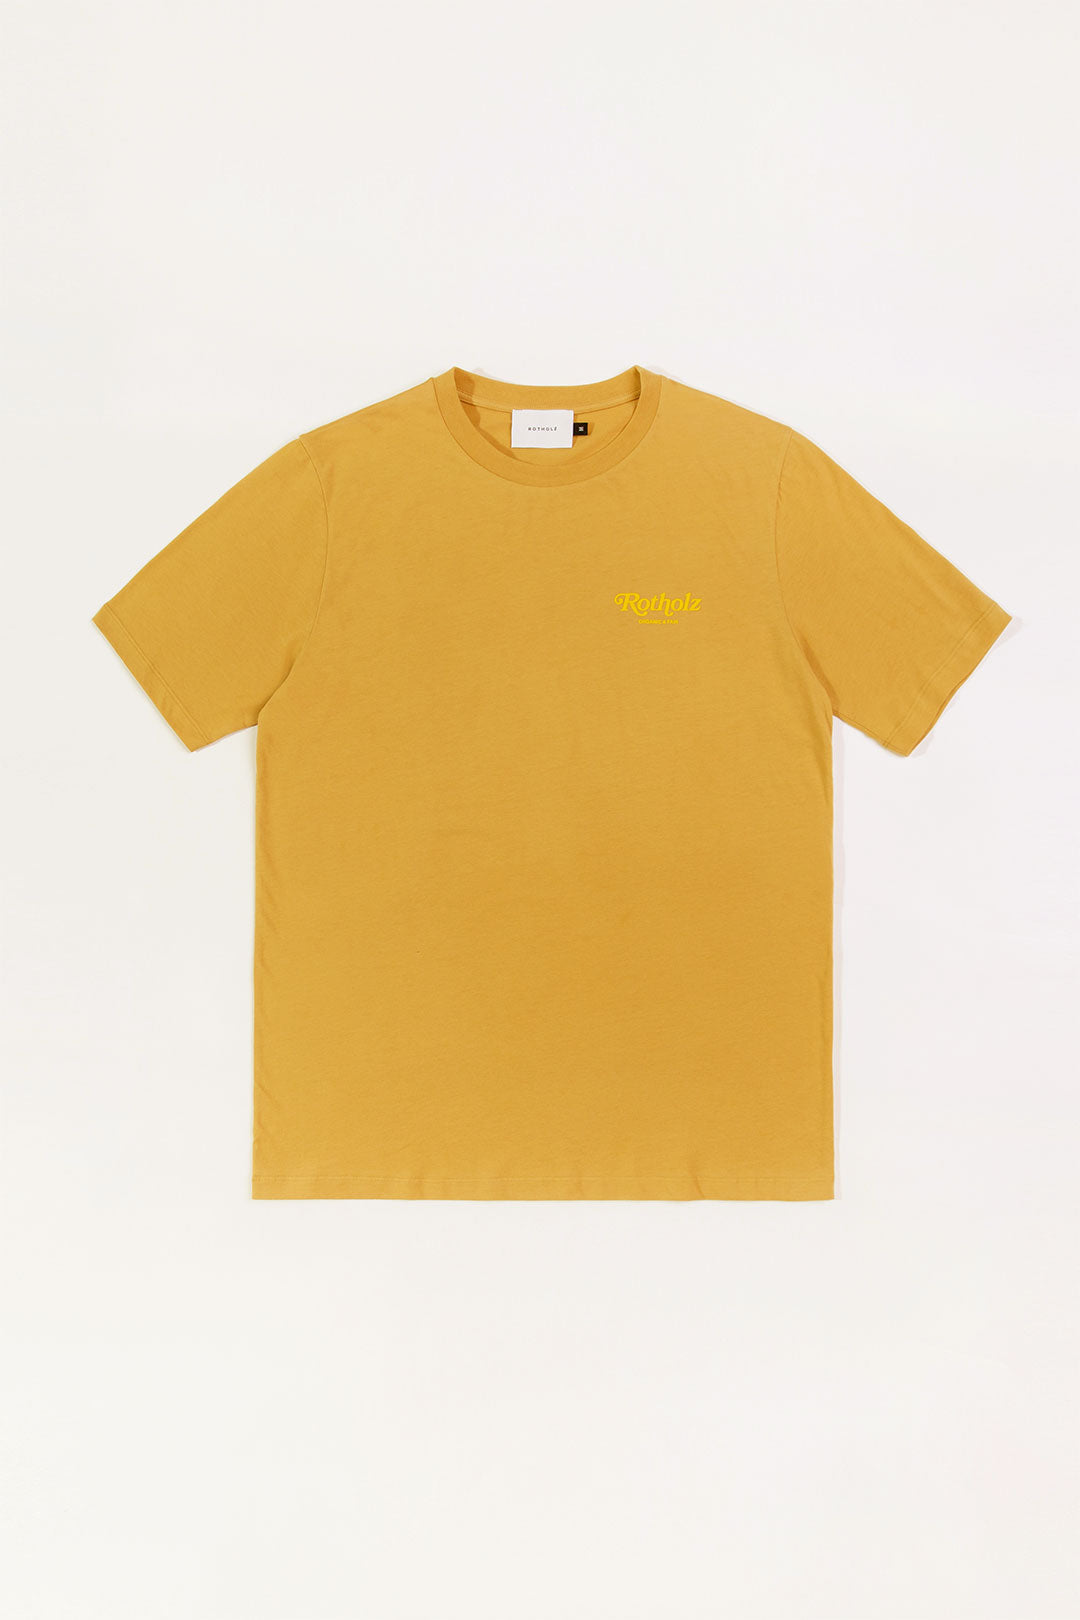 T-shirt jaune Retro Logo en coton 100% biologique de Rotholz